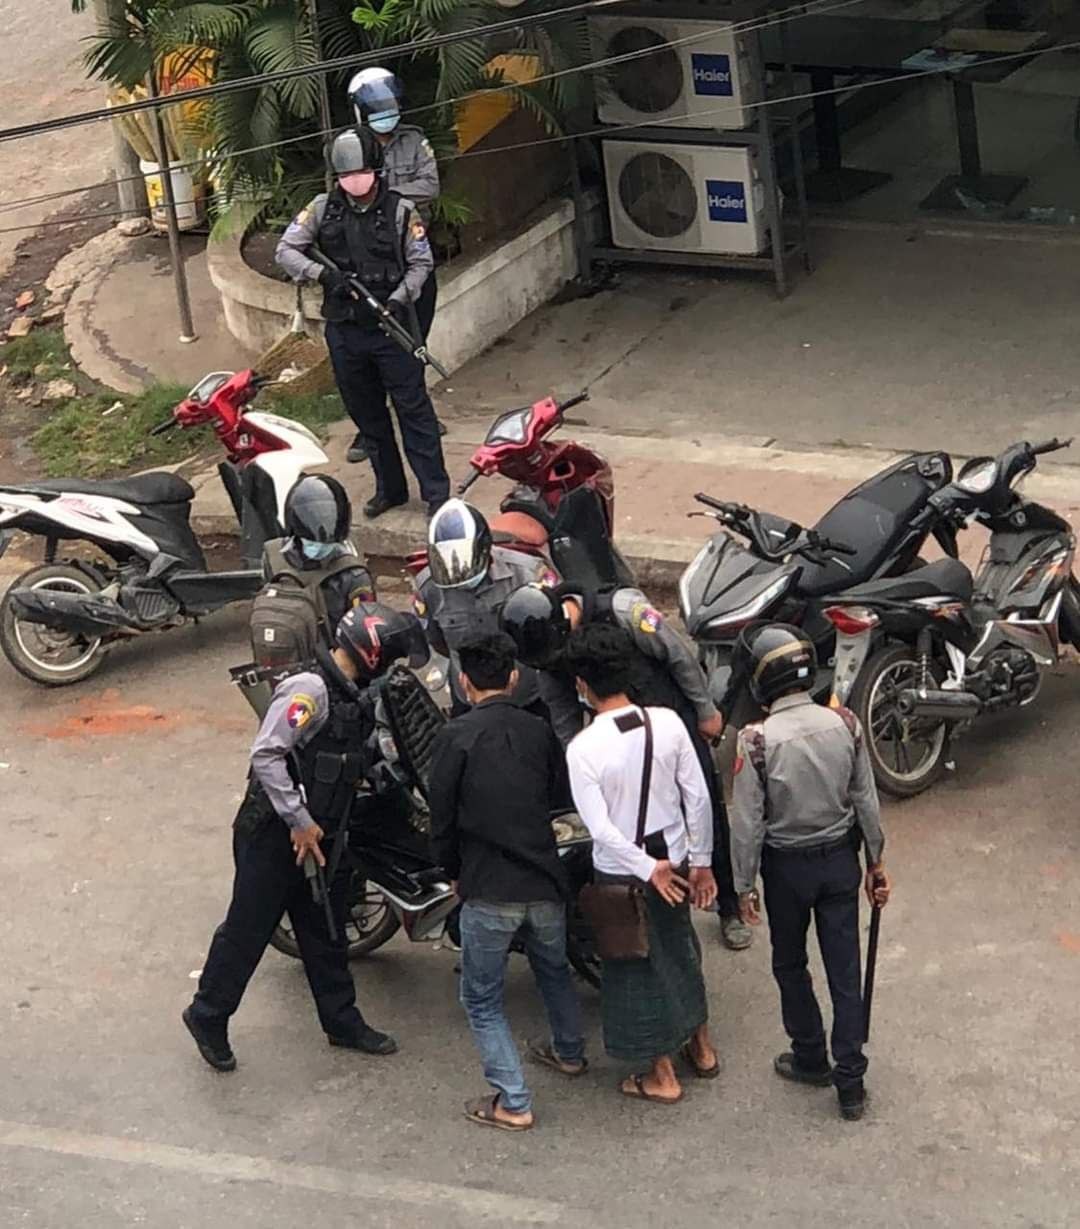 미얀마군경이 지나는 시민들의 휴대폰을 검색하고 있다. 휴대폰에서 시위나 유혈진압 관련 영상이 나오면 곧바로 체포한다.